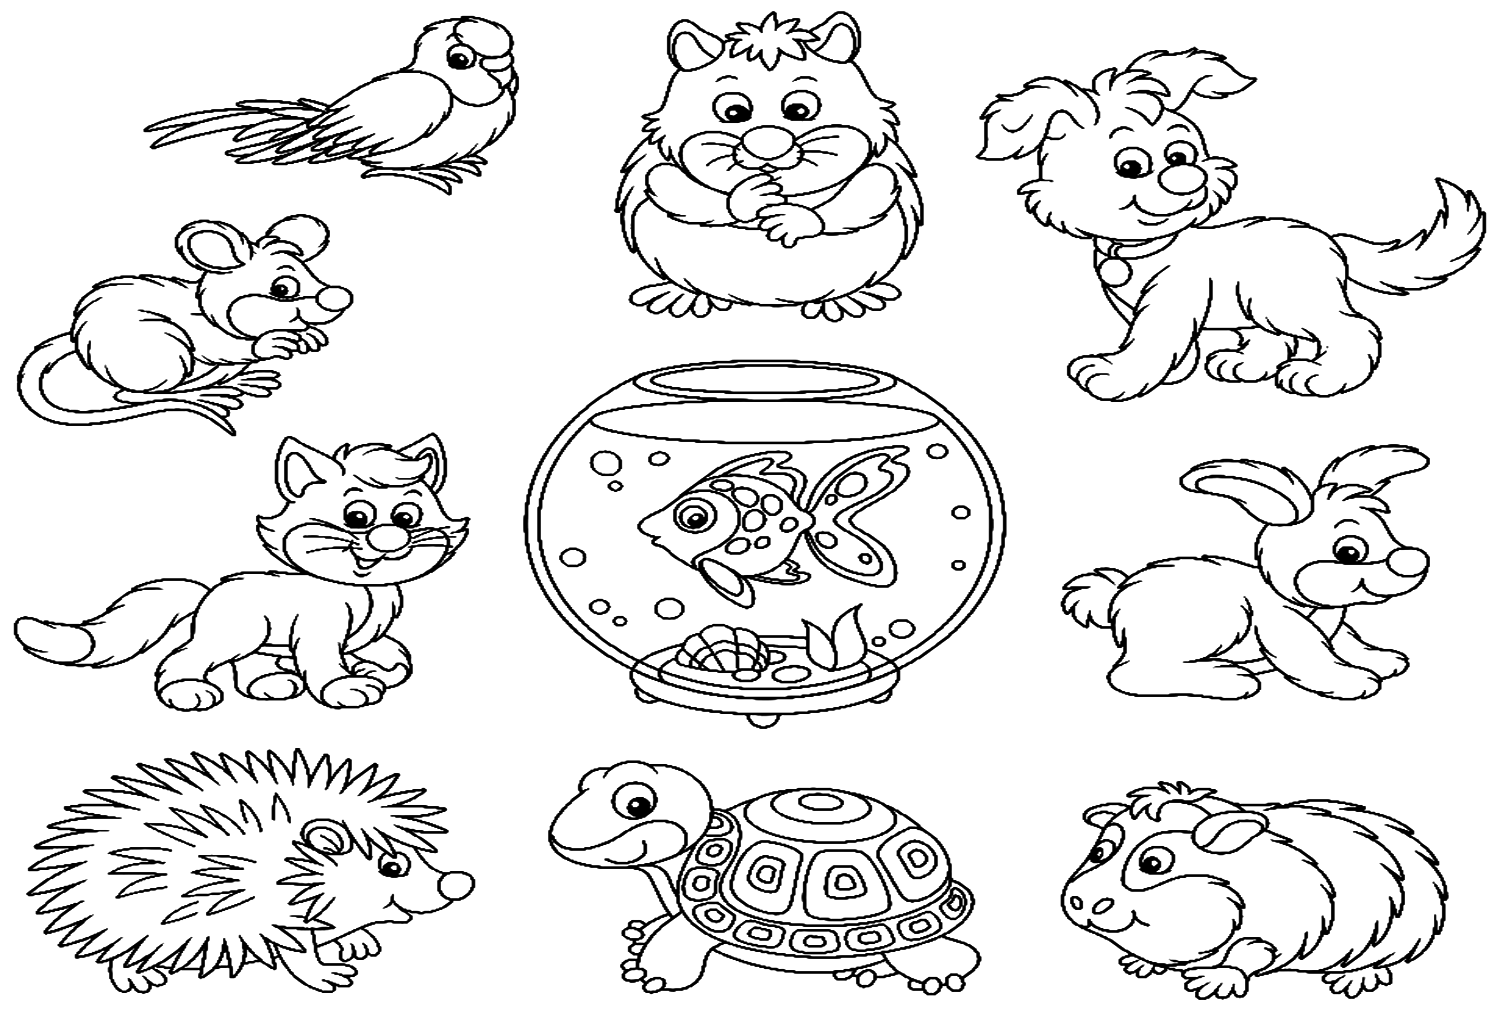 Забавный мультфильм о морской свинке и других домашних животных из морской свинки